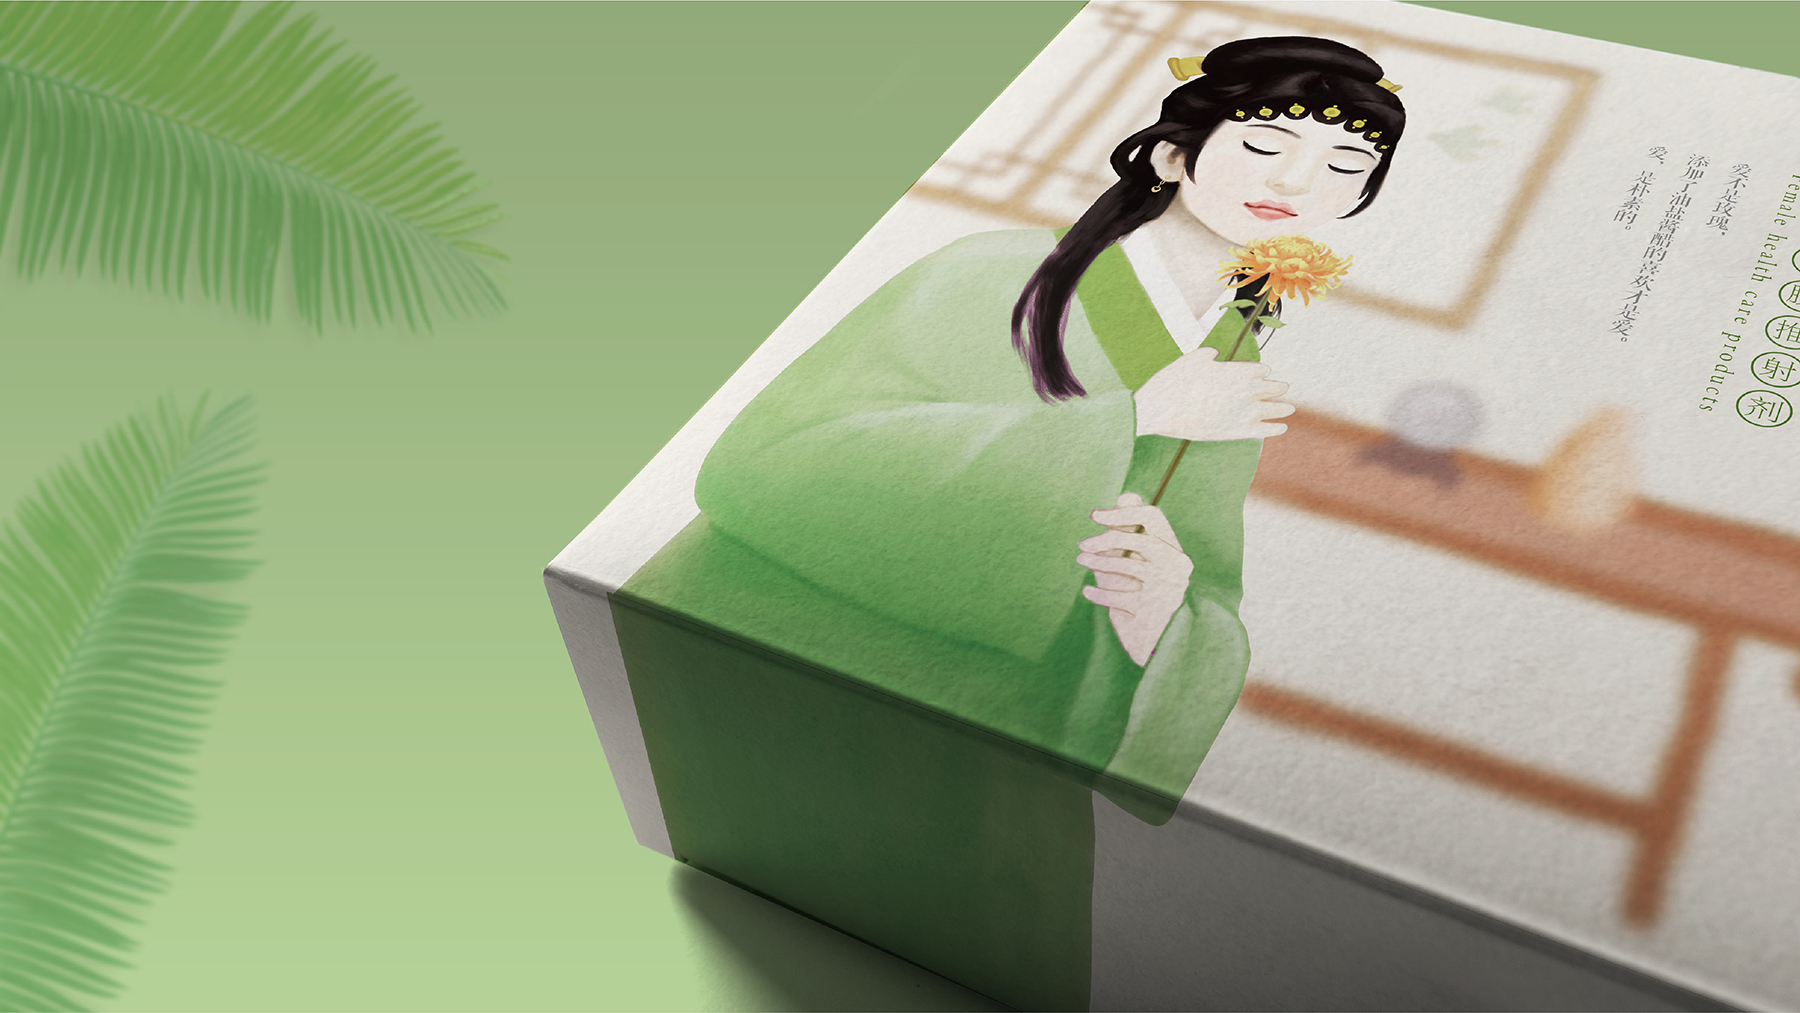 瑟瑟娘子-女性用品包装设计 女性用品包装设计 女性用品包装设计公司 第5张